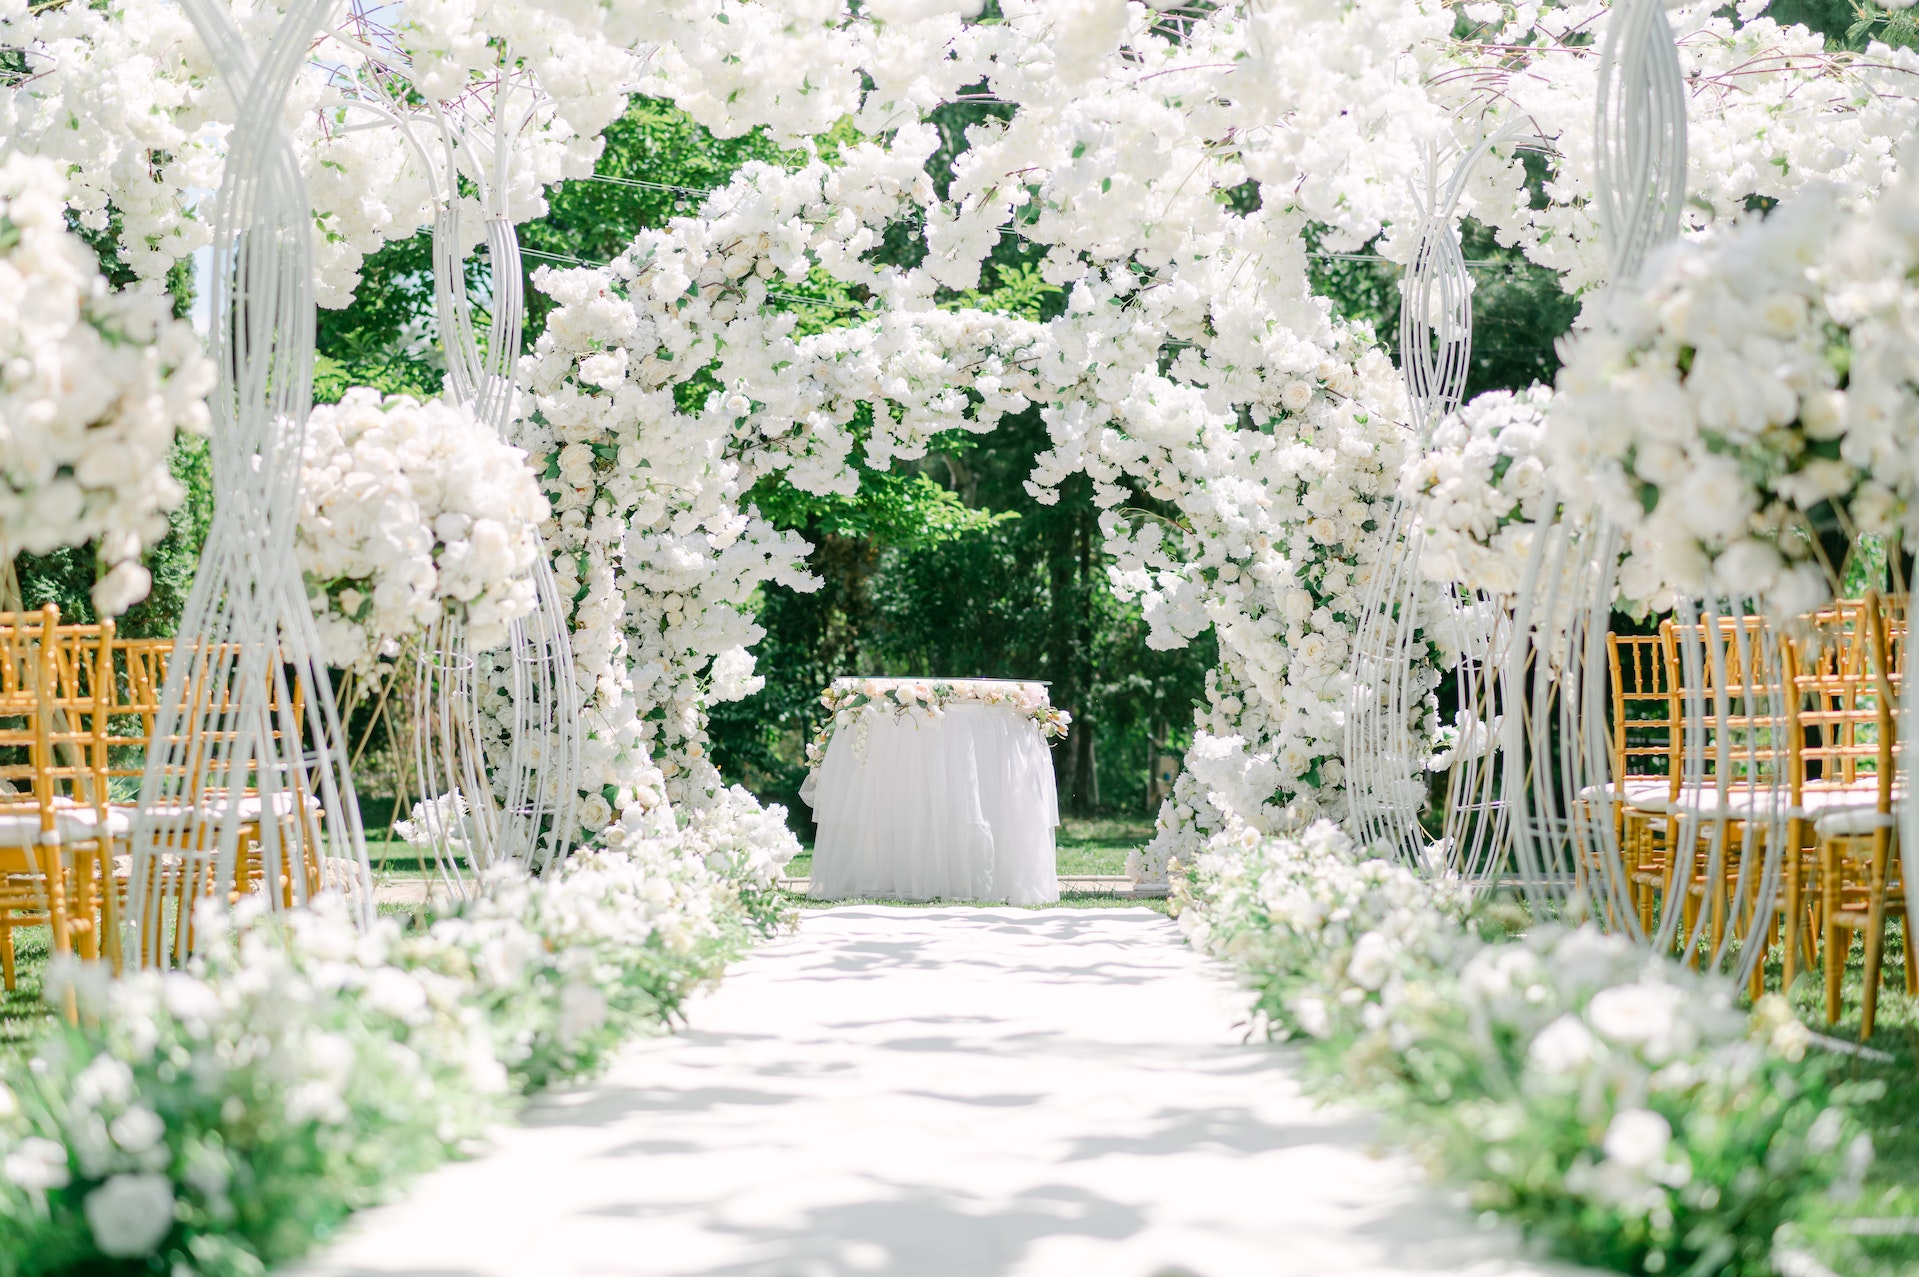 Un lieu de mariage orné de fleurs | Source : Pexels